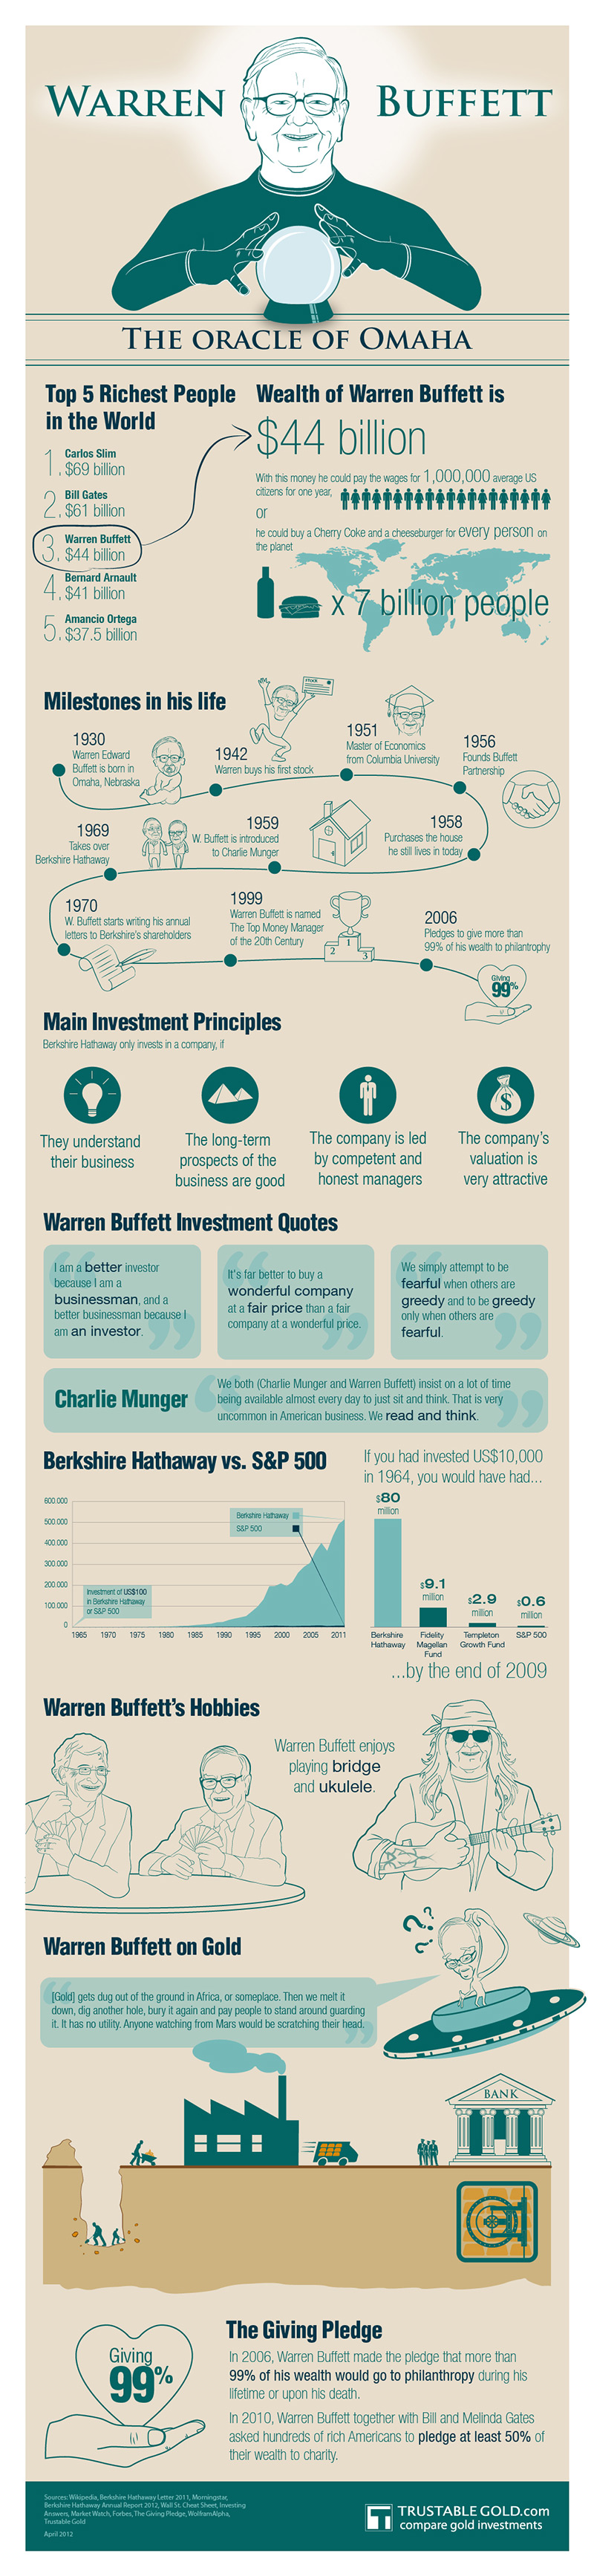 Warren Buffett Infographic